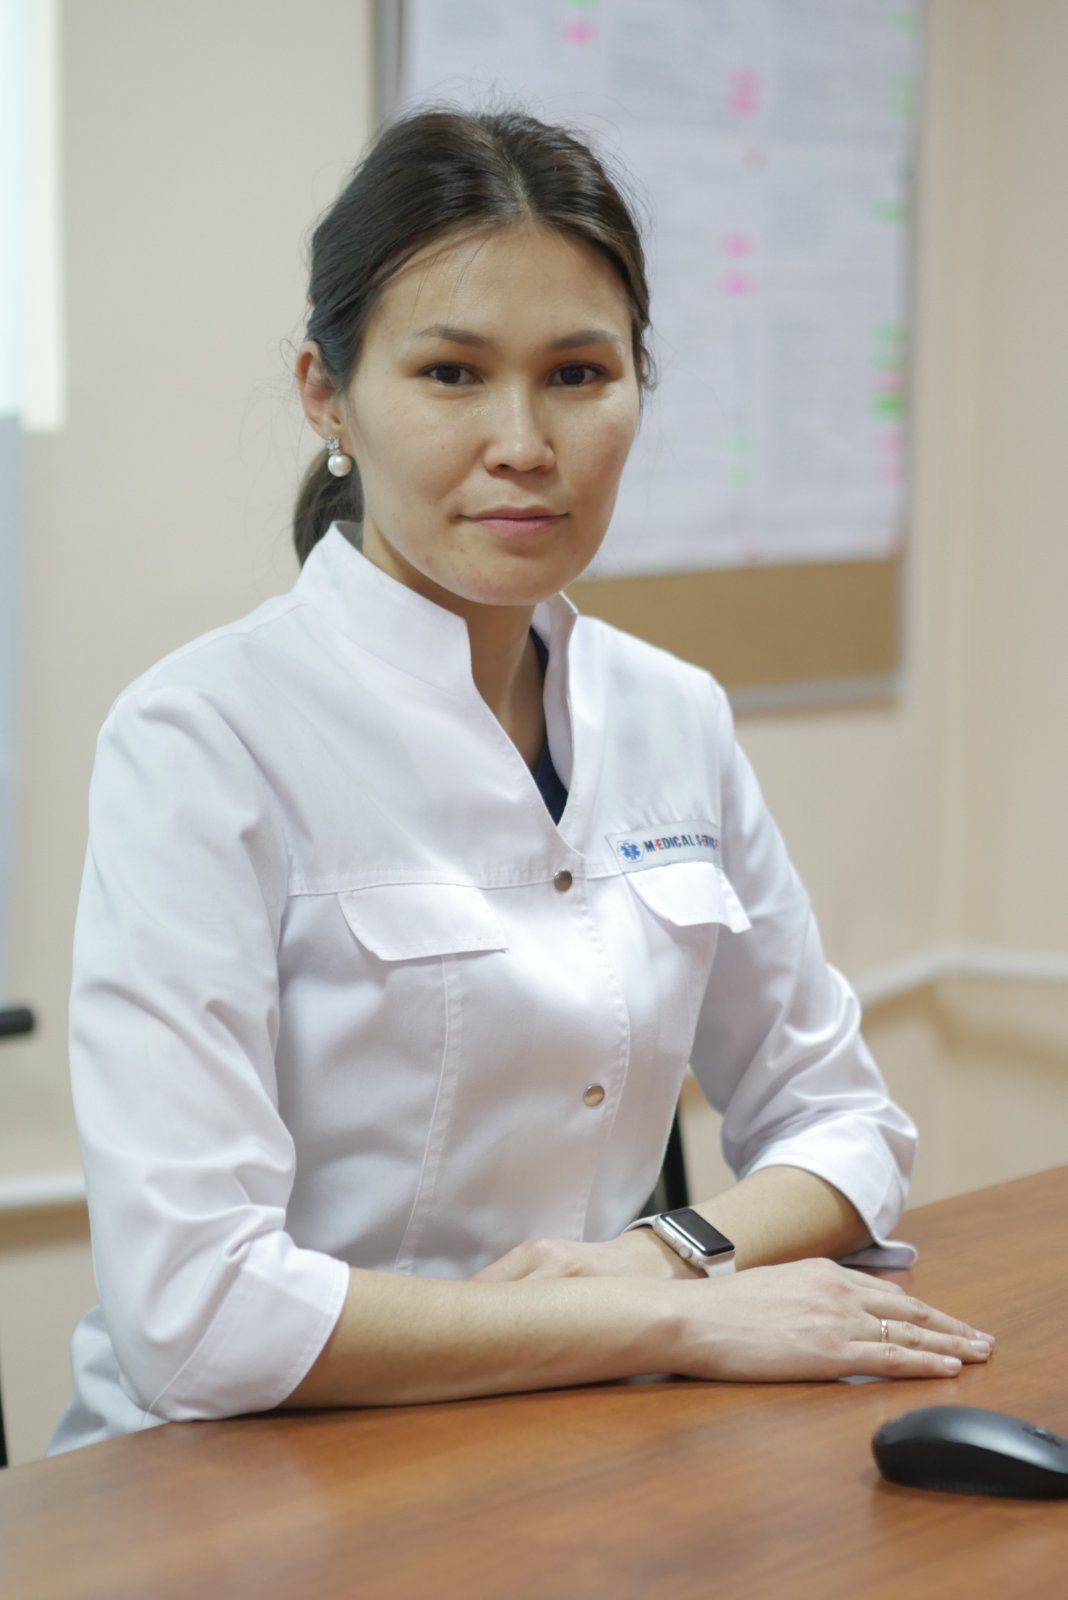 Хамаева Надежда Антоновна, главный внештатный специалист МЗ РБ по поликлинической терапии и общеврачебной практике